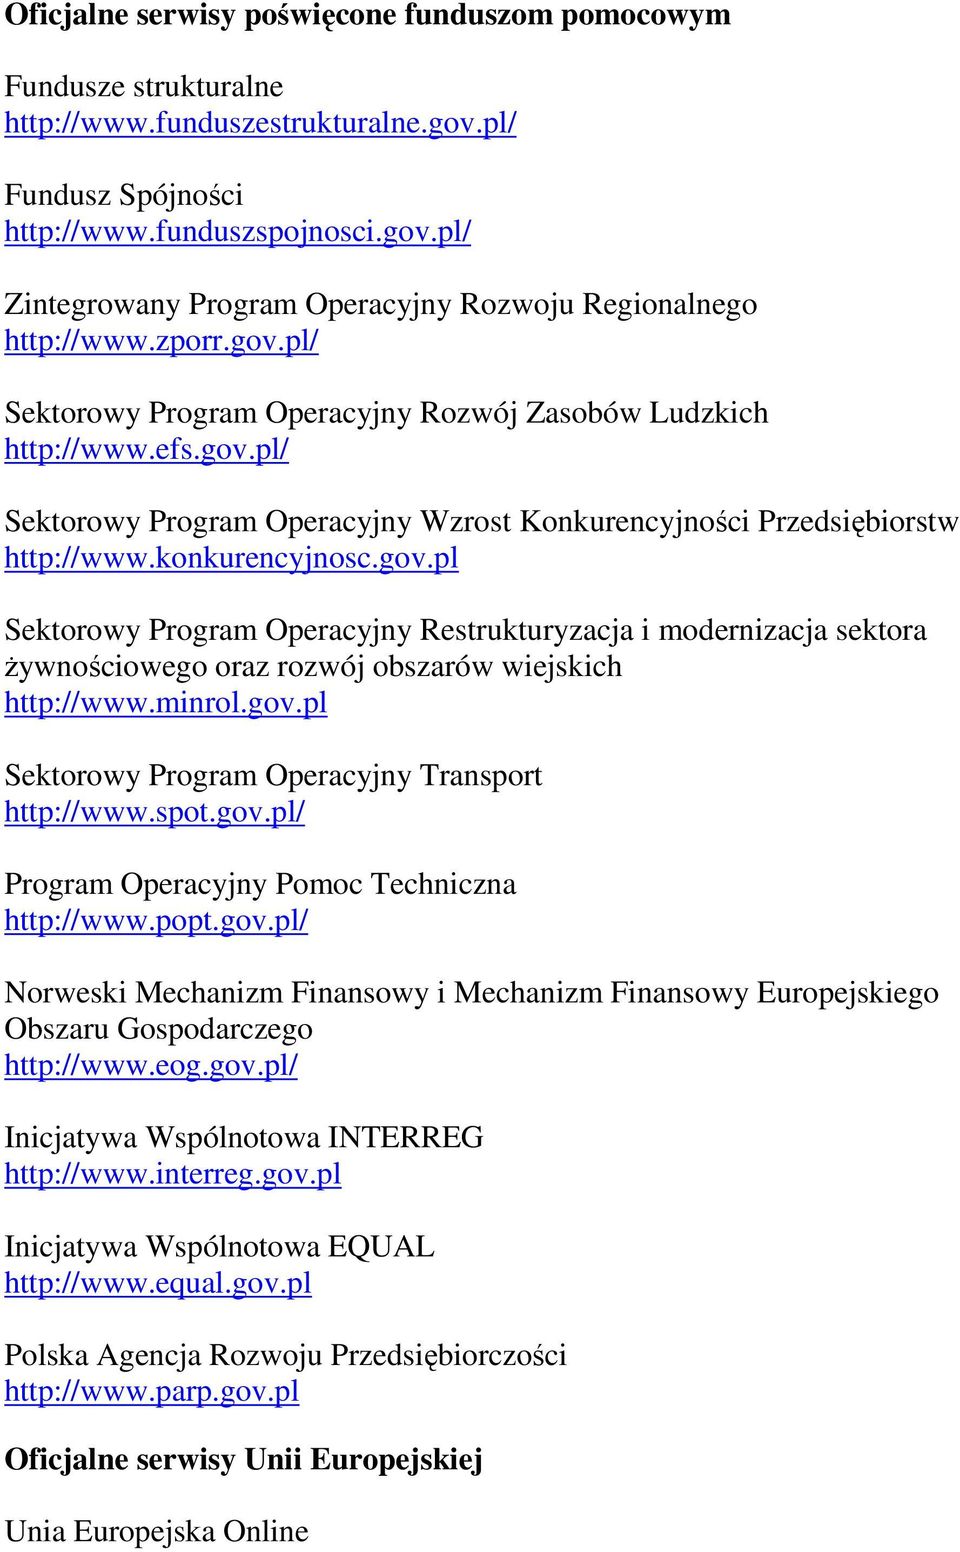 minrol.gov.pl Sektorowy Program Operacyjny Transport http://www.spot.gov.pl/ Program Operacyjny Pomoc Techniczna http://www.popt.gov.pl/ Norweski Mechanizm Finansowy i Mechanizm Finansowy Europejskiego Obszaru Gospodarczego http://www.